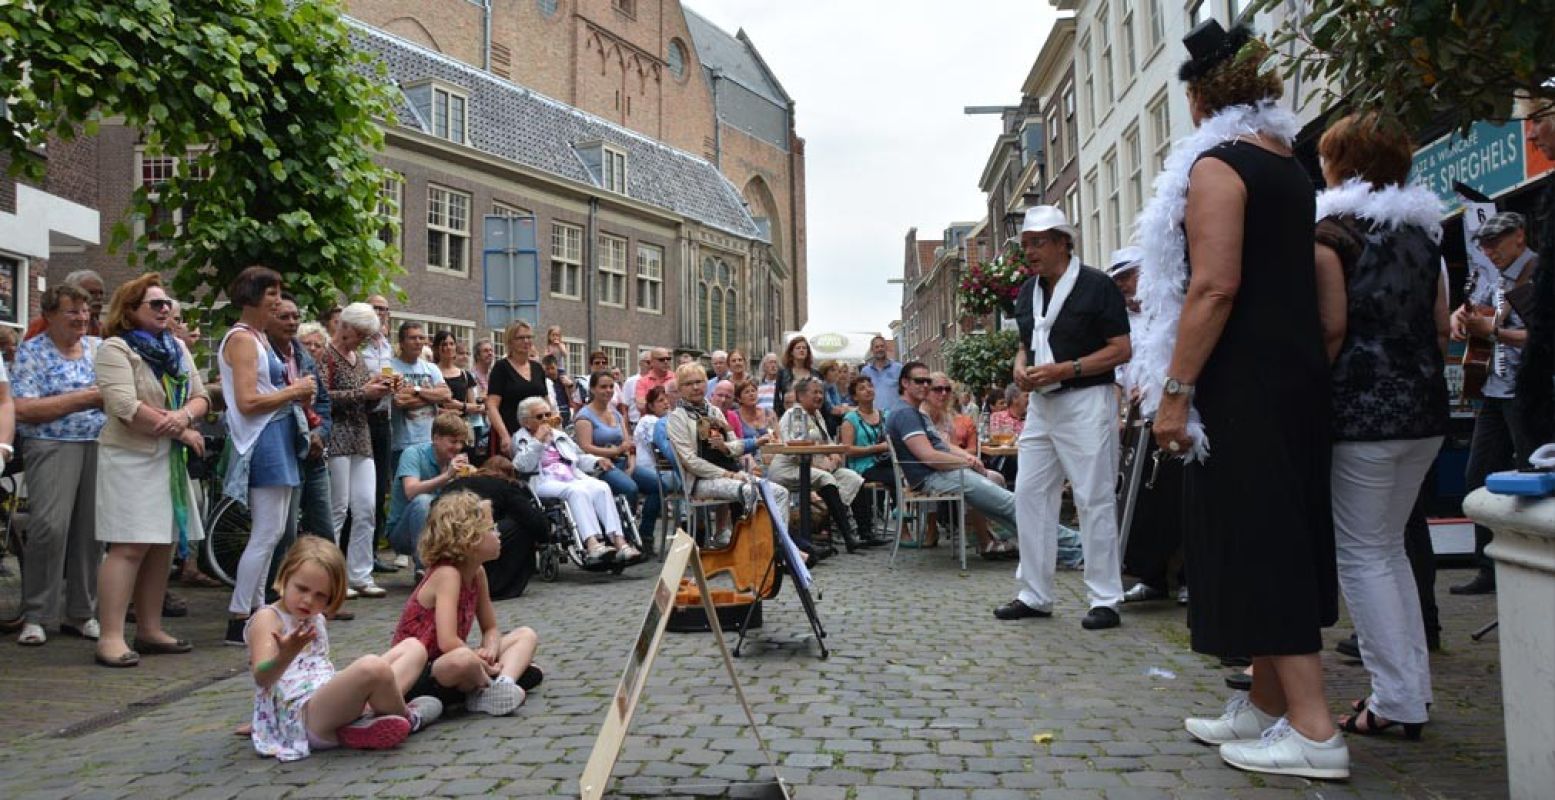 Wie van de straatmuzikanten wint de Gouden Pet? Foto: organisatie Leidse Lakenfeesten.